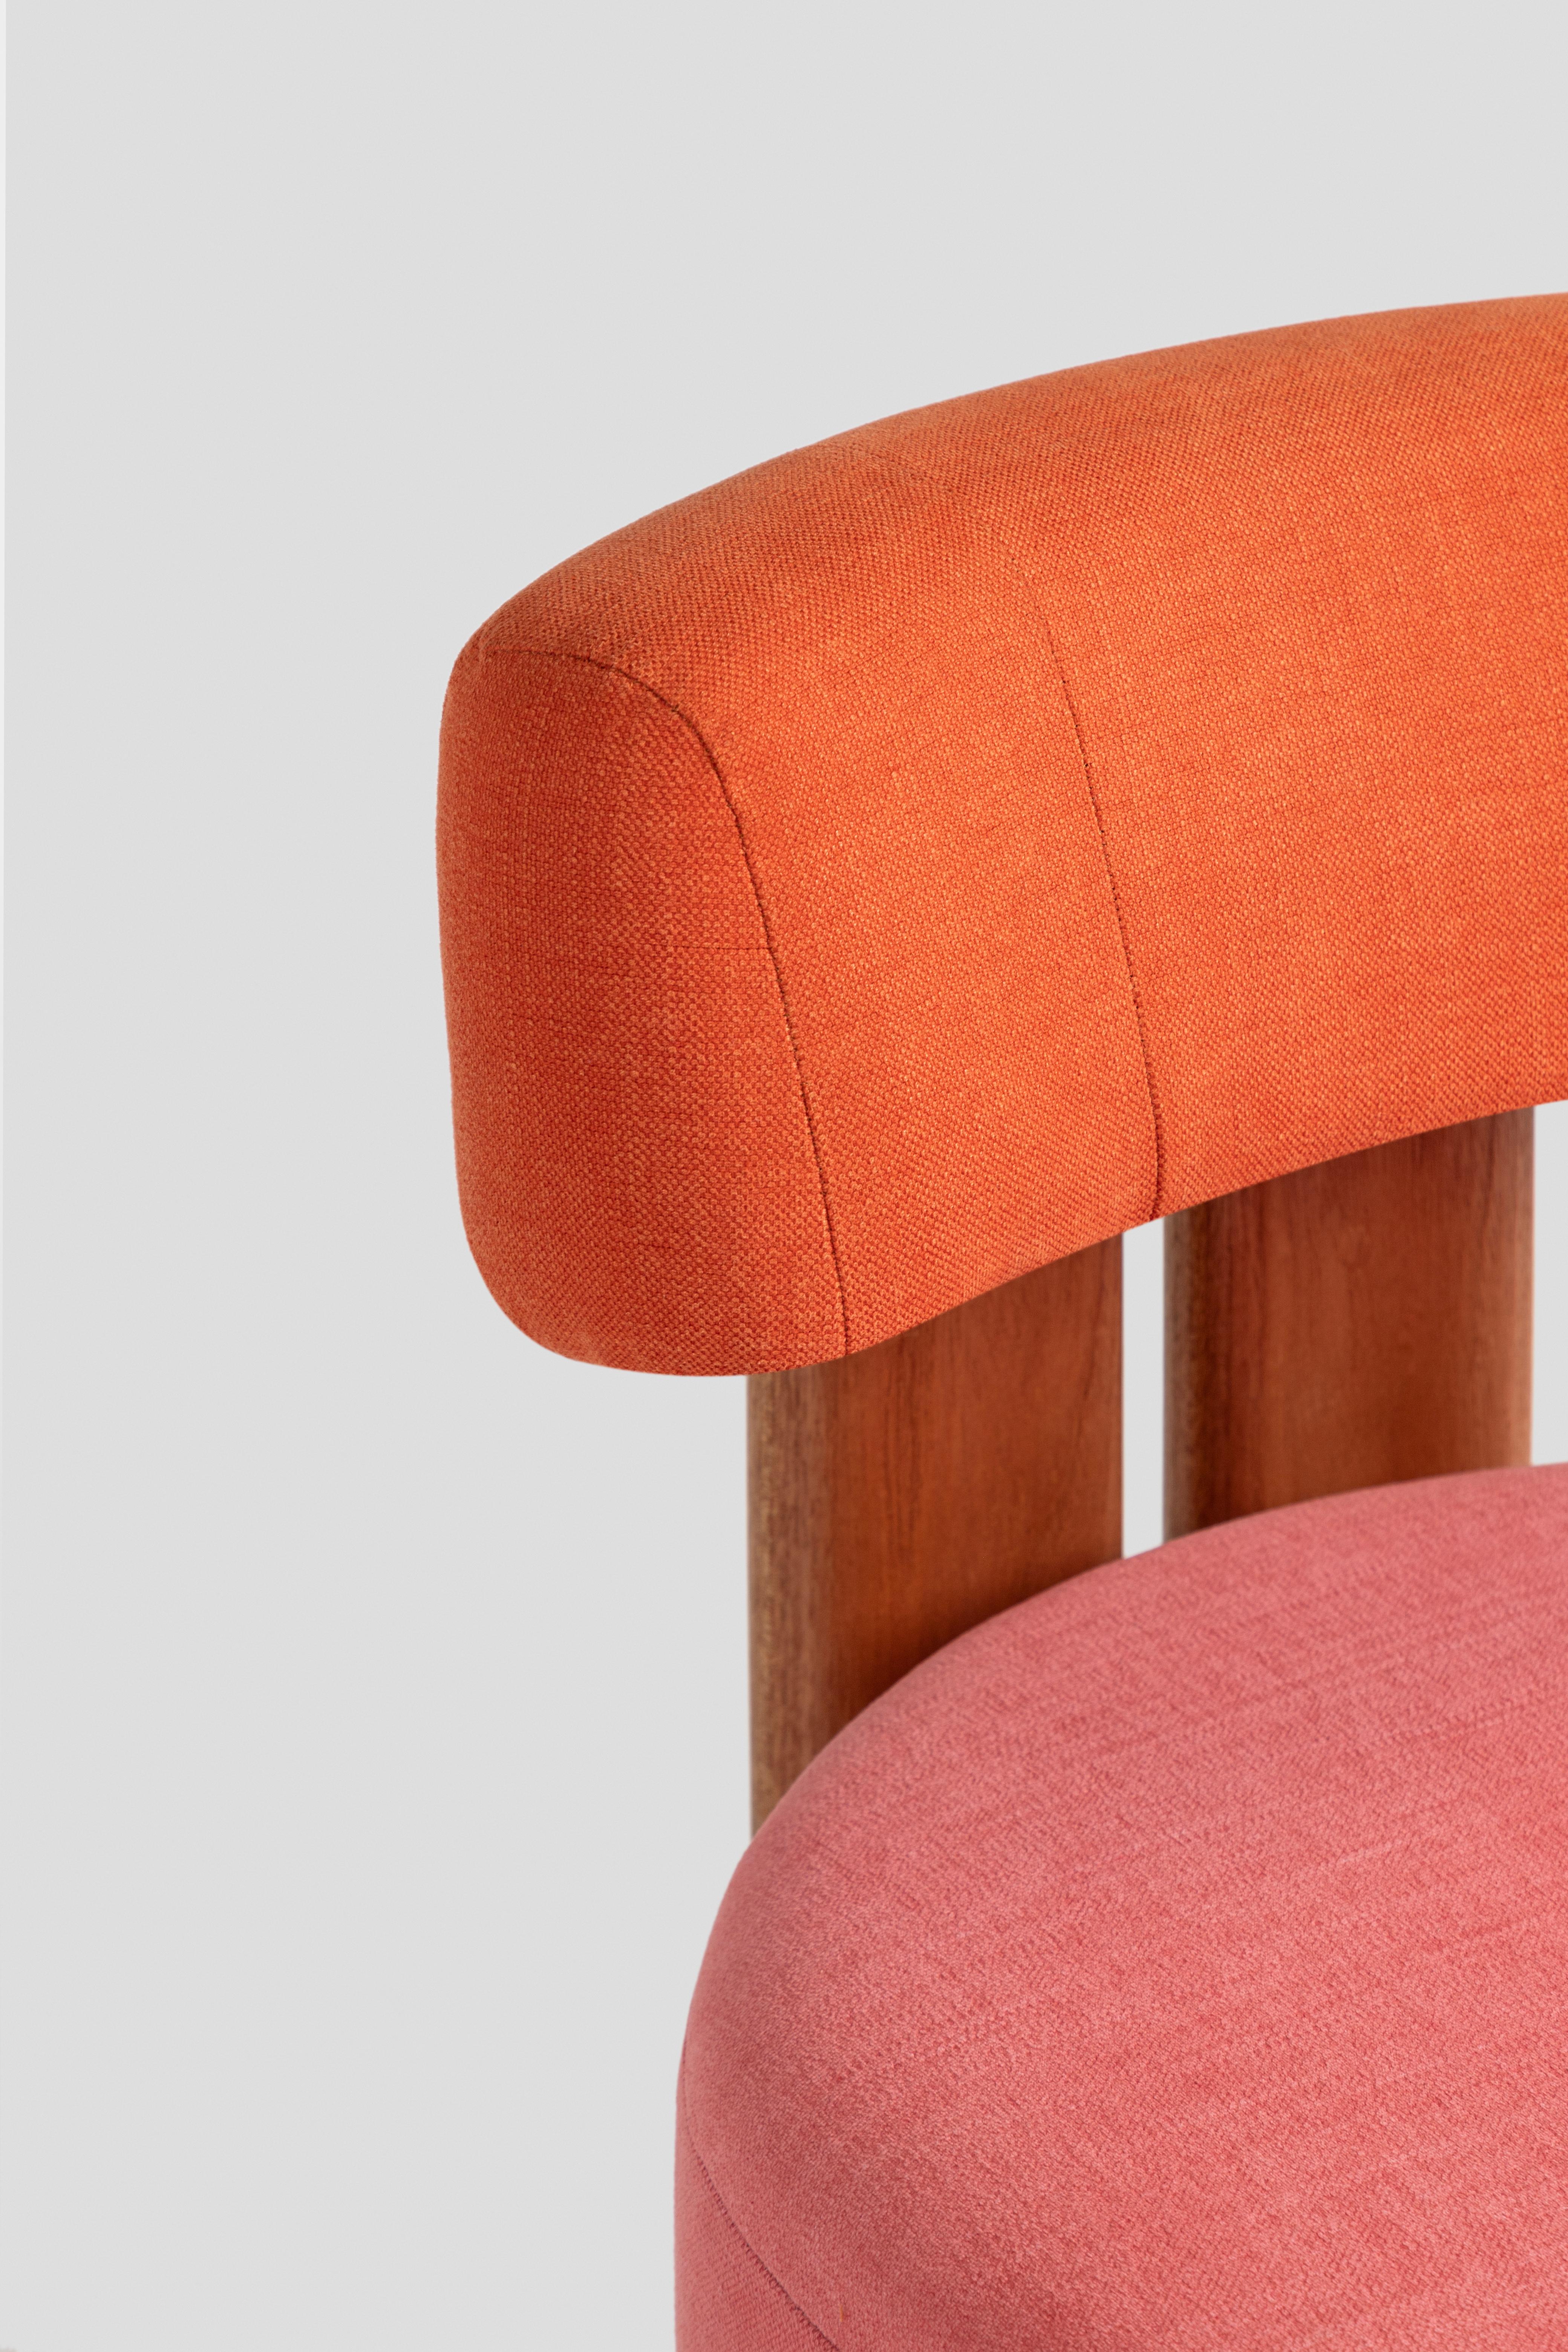 ANNI Toronja De la Paz: Niedriger Stuhl, limitierte Auflage  Zeitgenössisches mexikanisches Design im Angebot 3